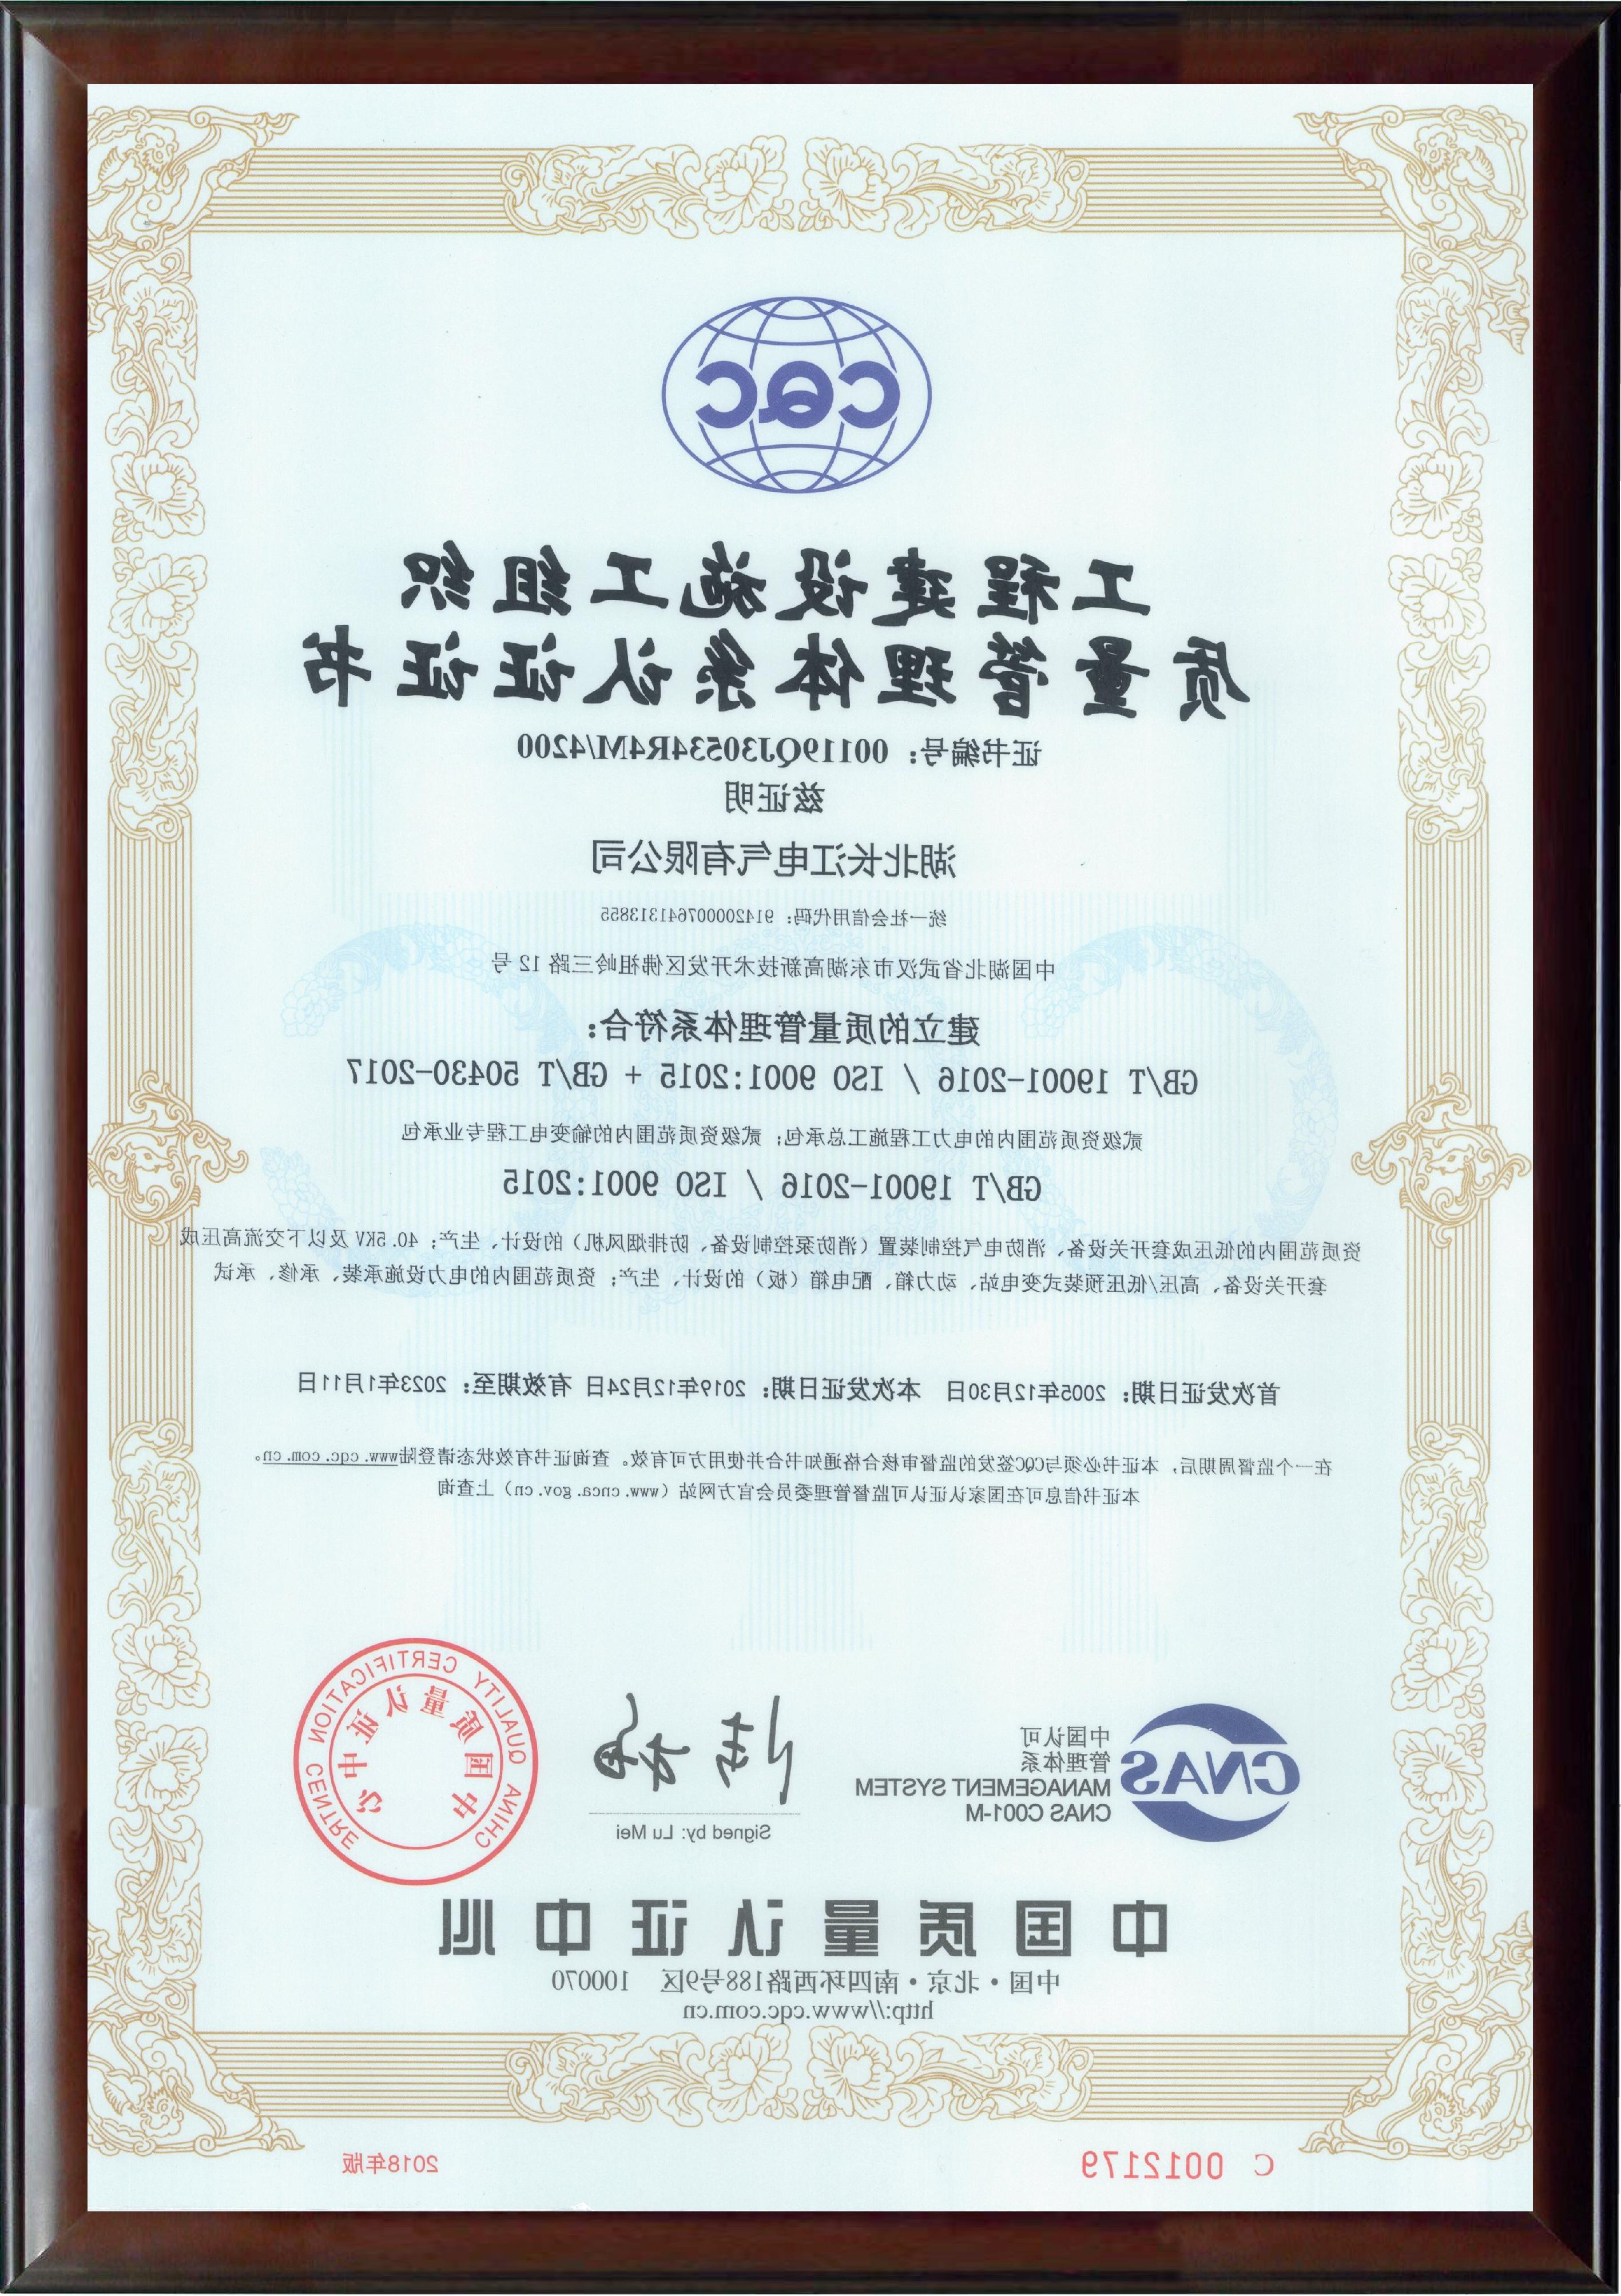 博彩平台施工组织质量管理体系认证证书